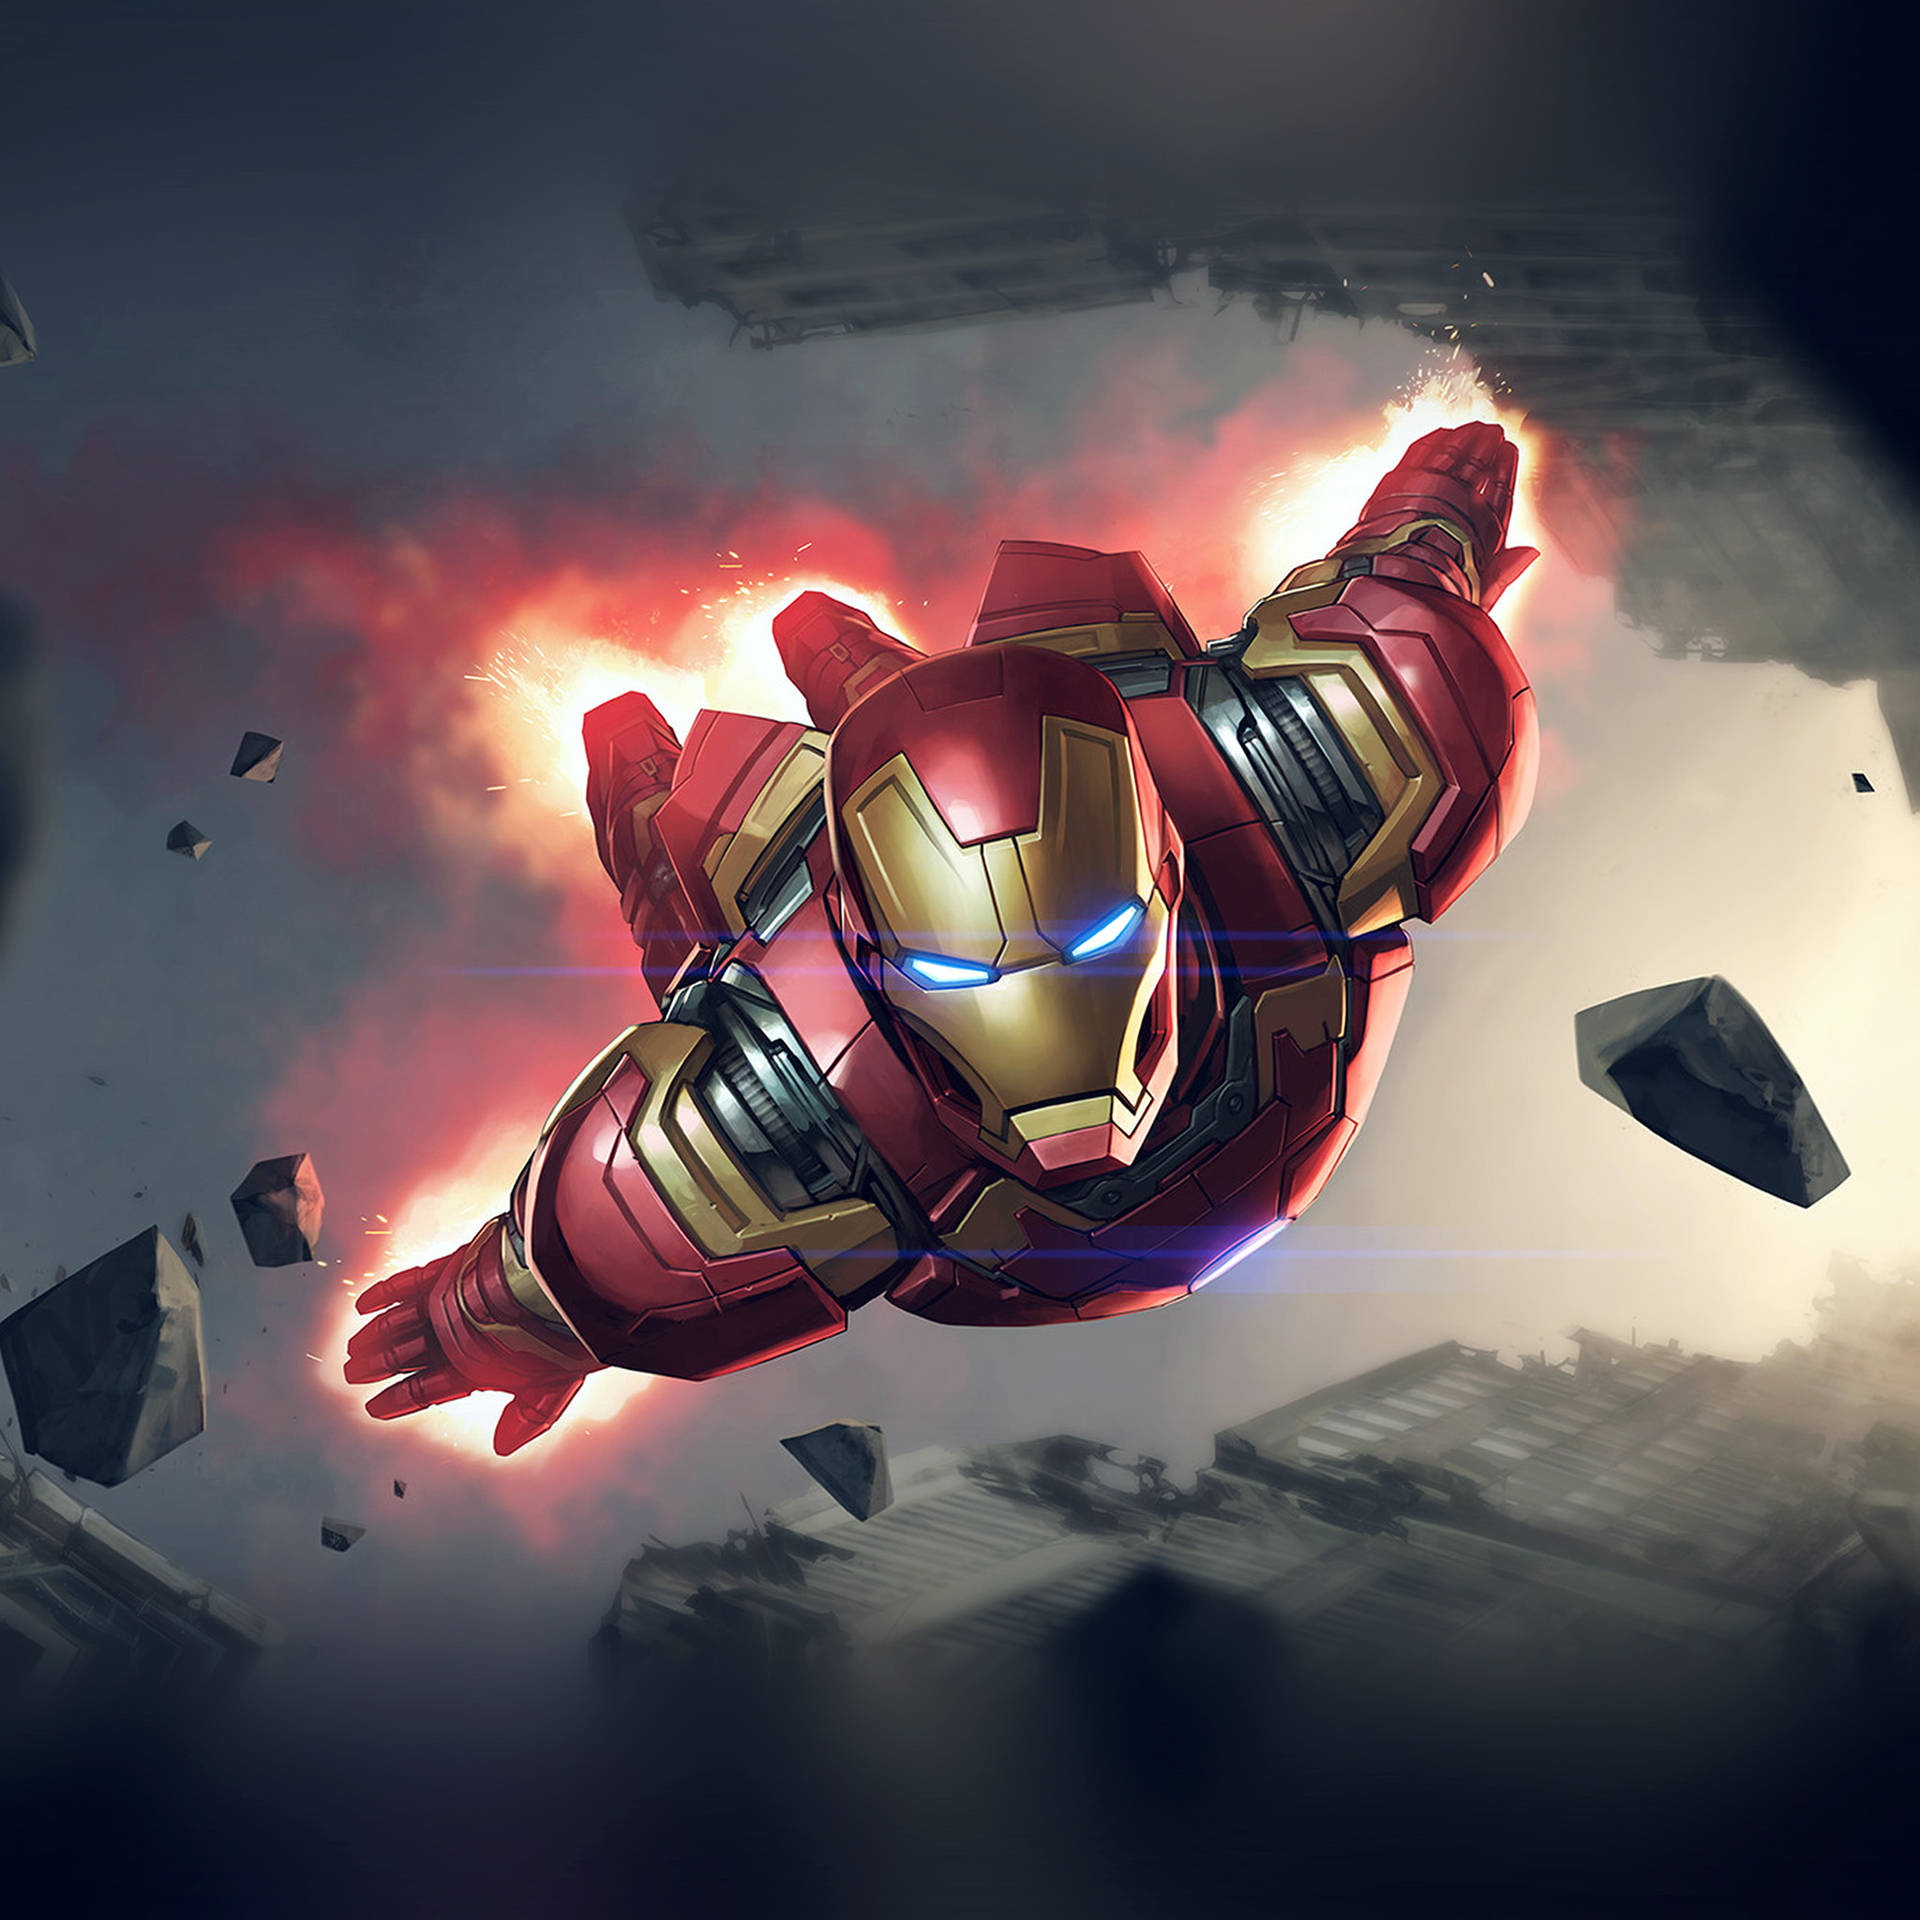 Flying Marvel Avenger Iron Man Superhero Wallpaper